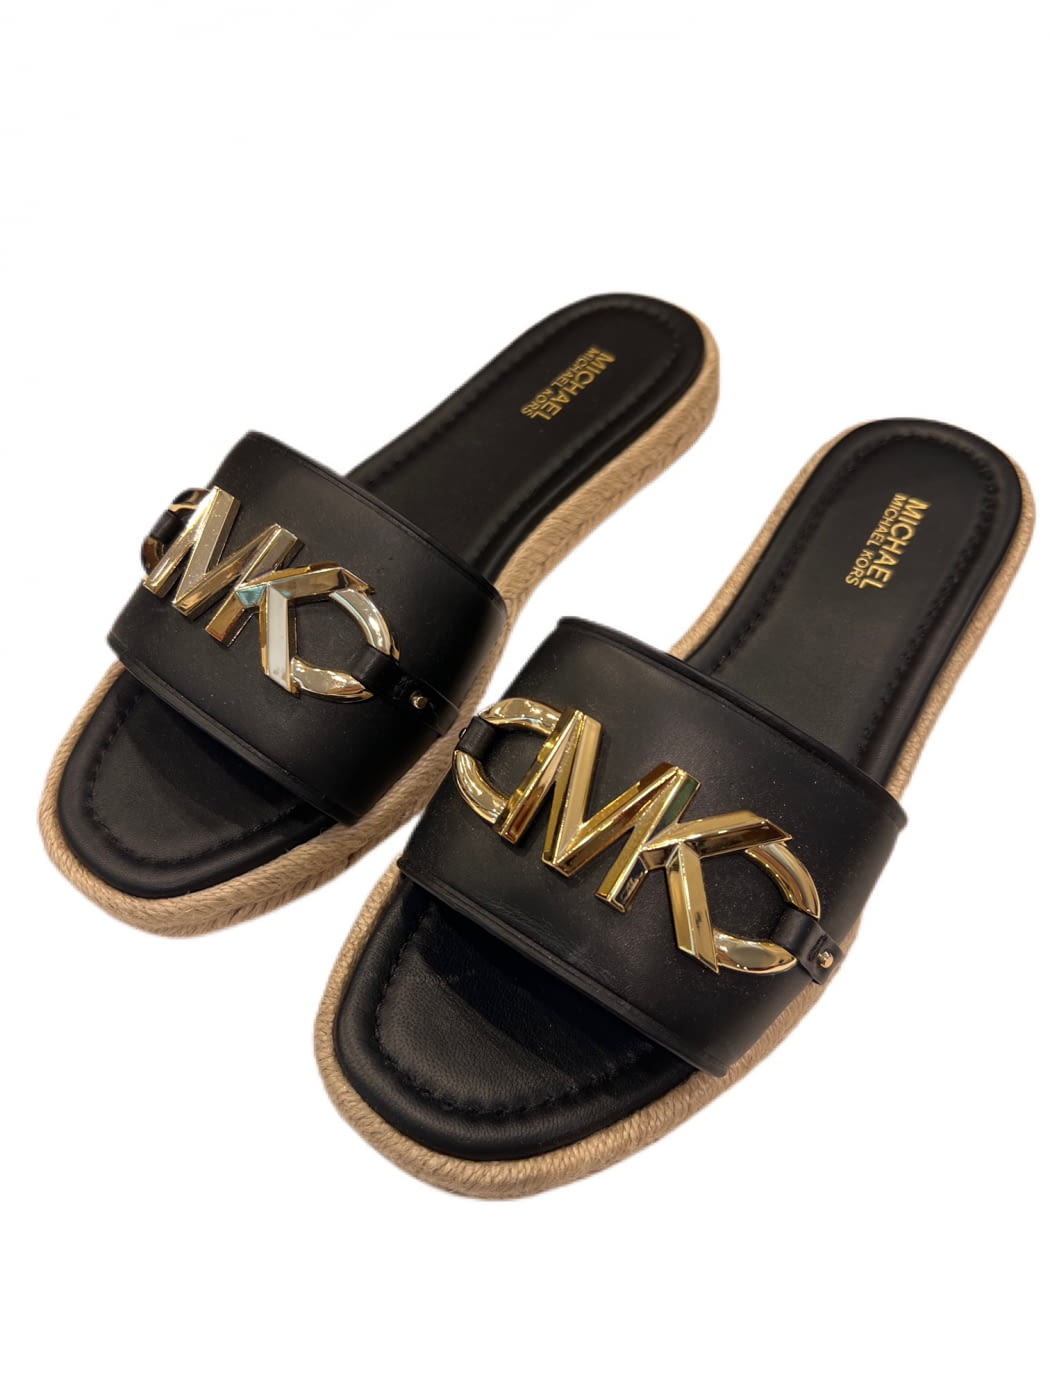 MICHAEL KORS sandalia negra con suela de esparto y aplicaciones en oro